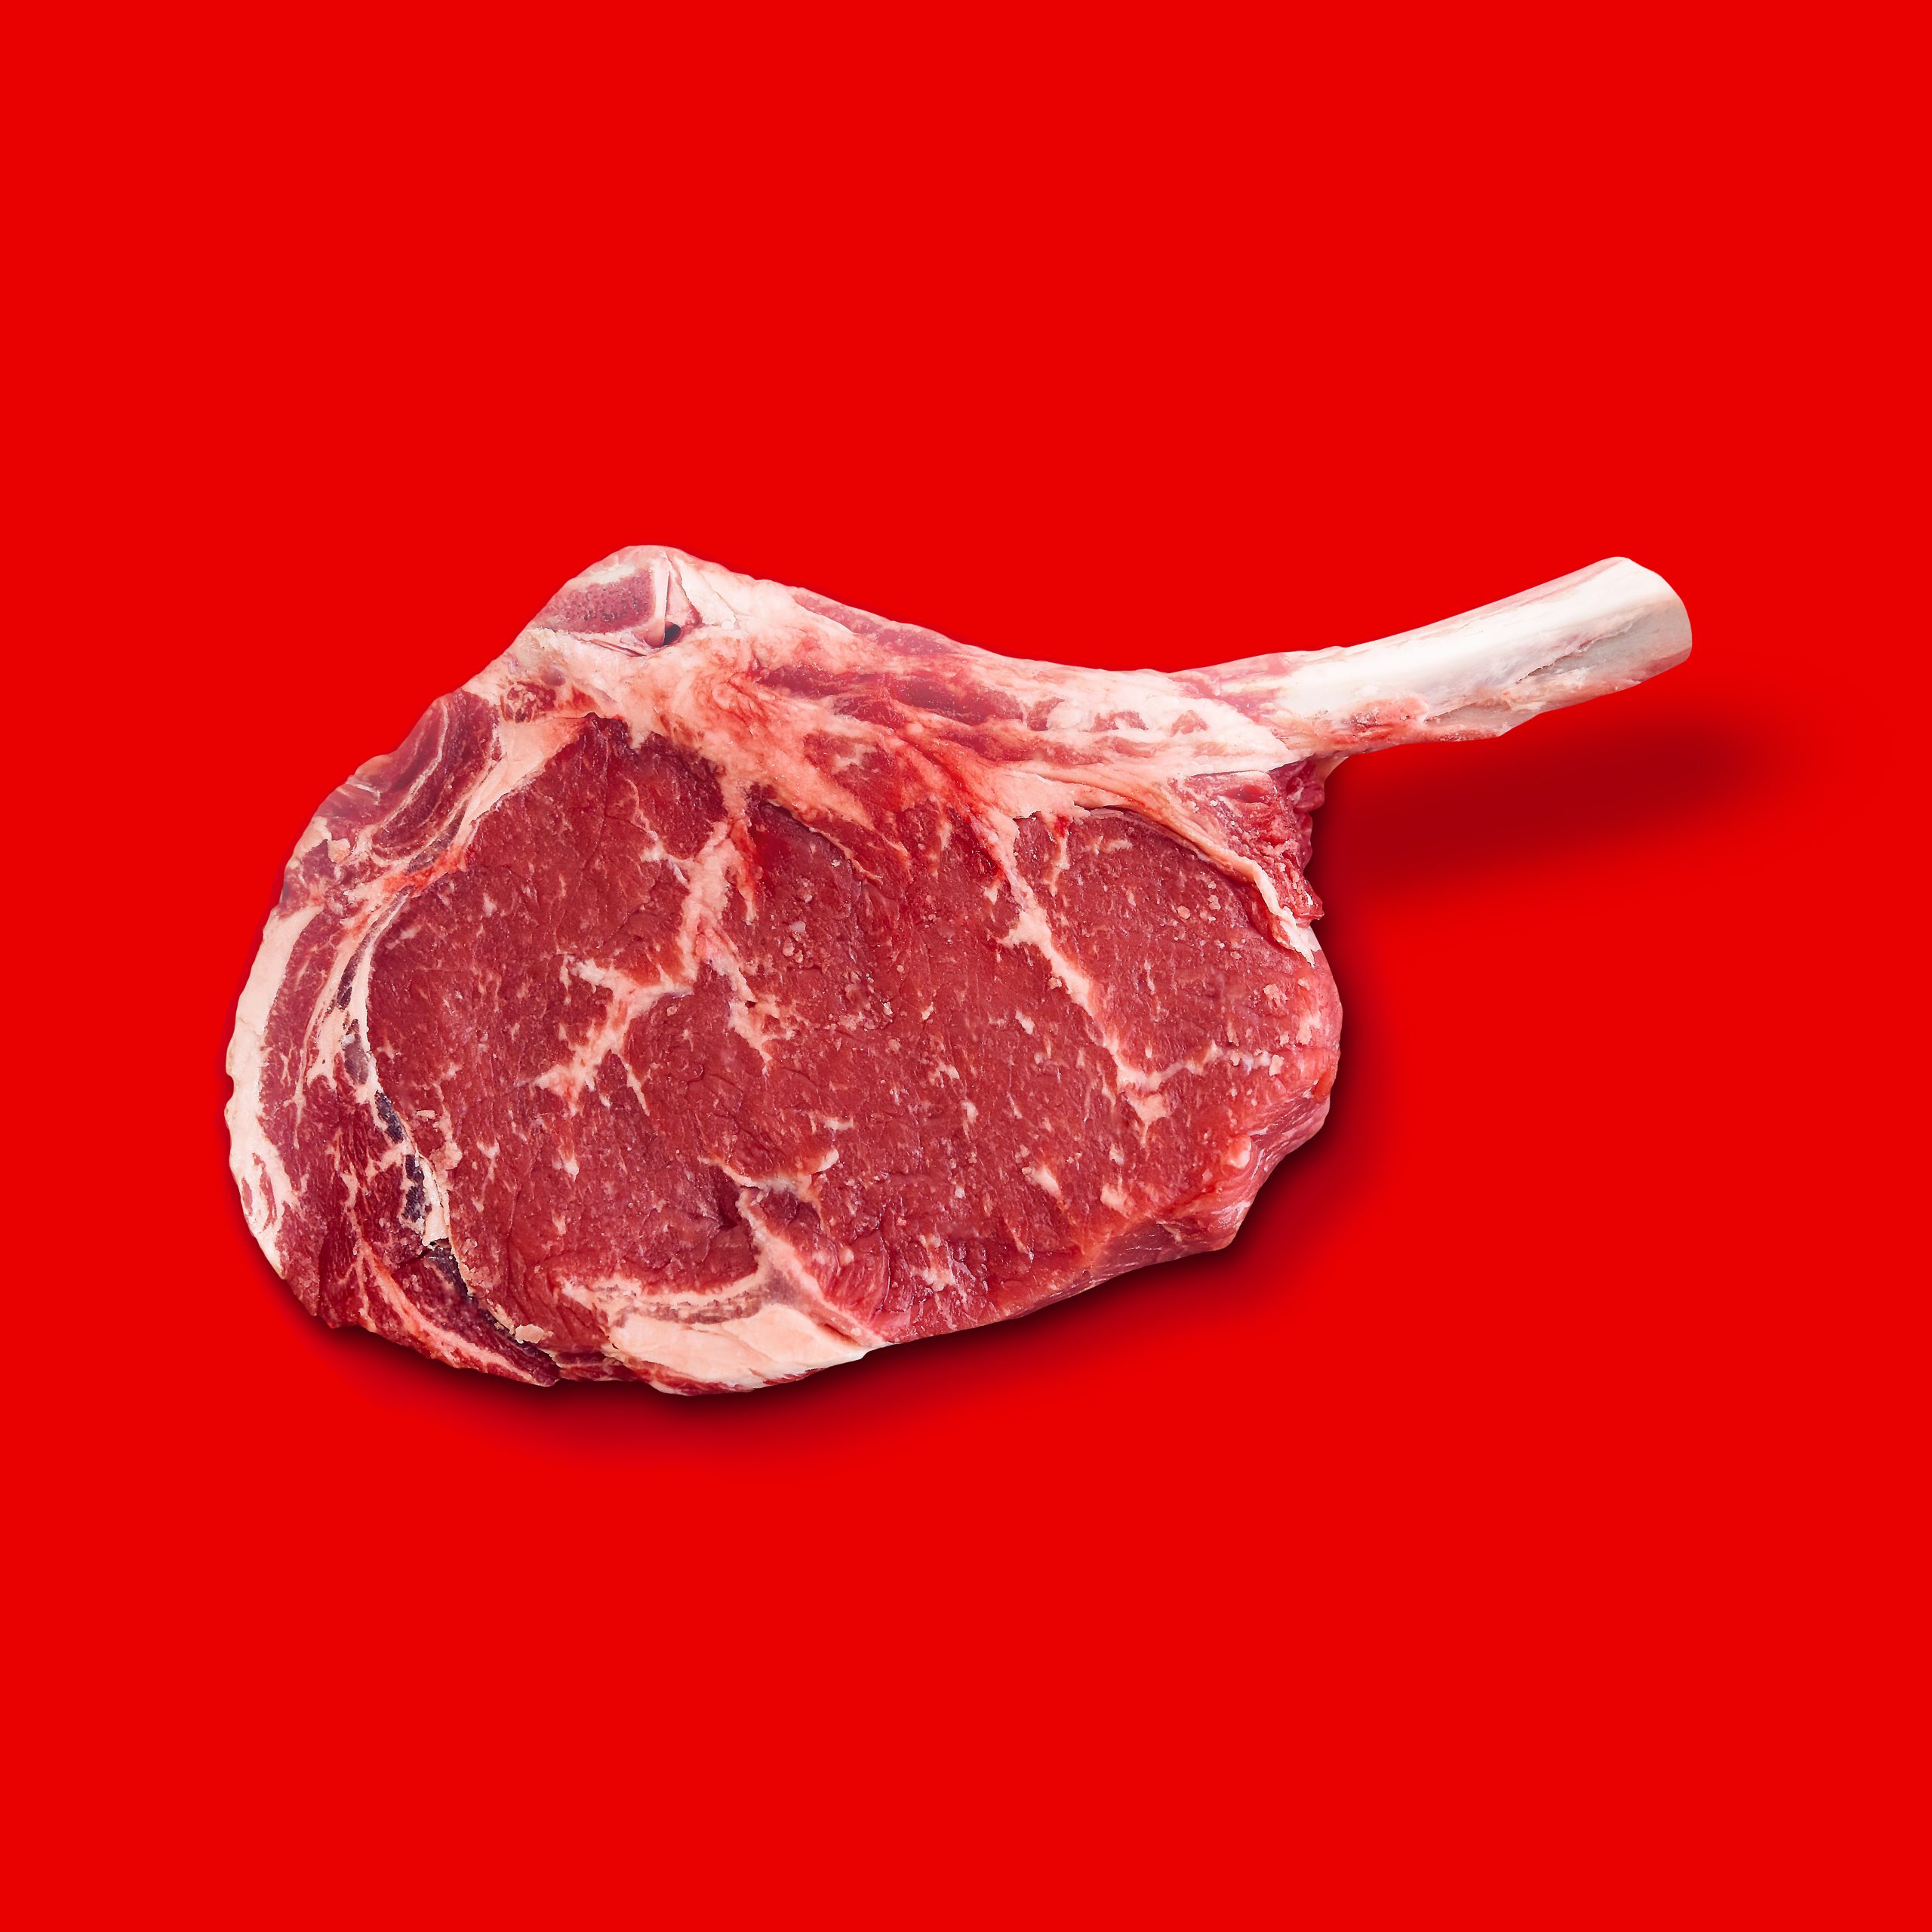 Steak on red background